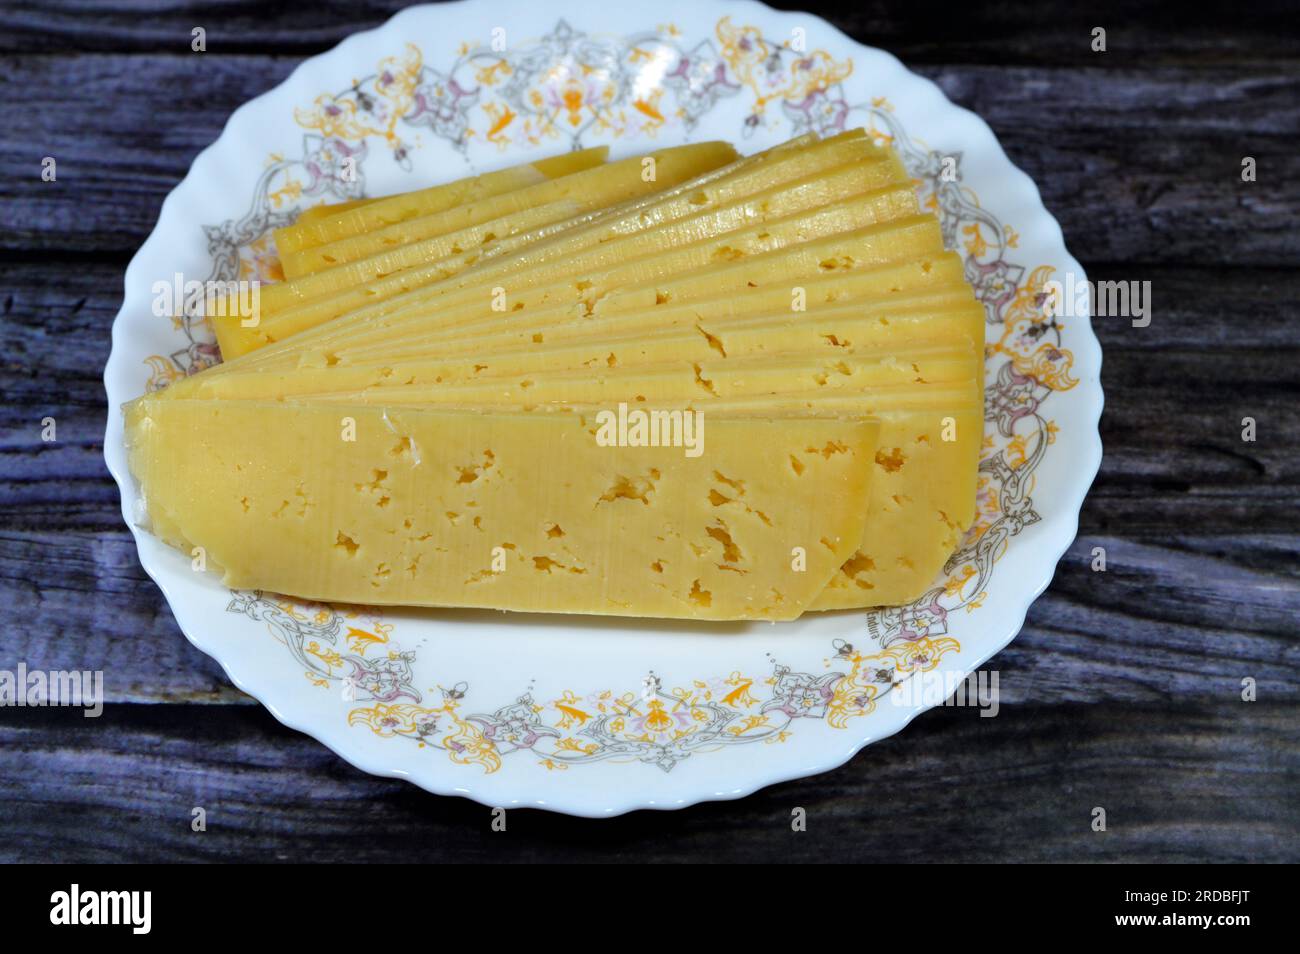 Les tranches de fromage Rumi égyptien, également appelé gebna romiya ou gebna turkiya, Roumi, Romi également Romy, fromage dur de parmesan du Moyen-Orient, a un pungent s. Banque D'Images